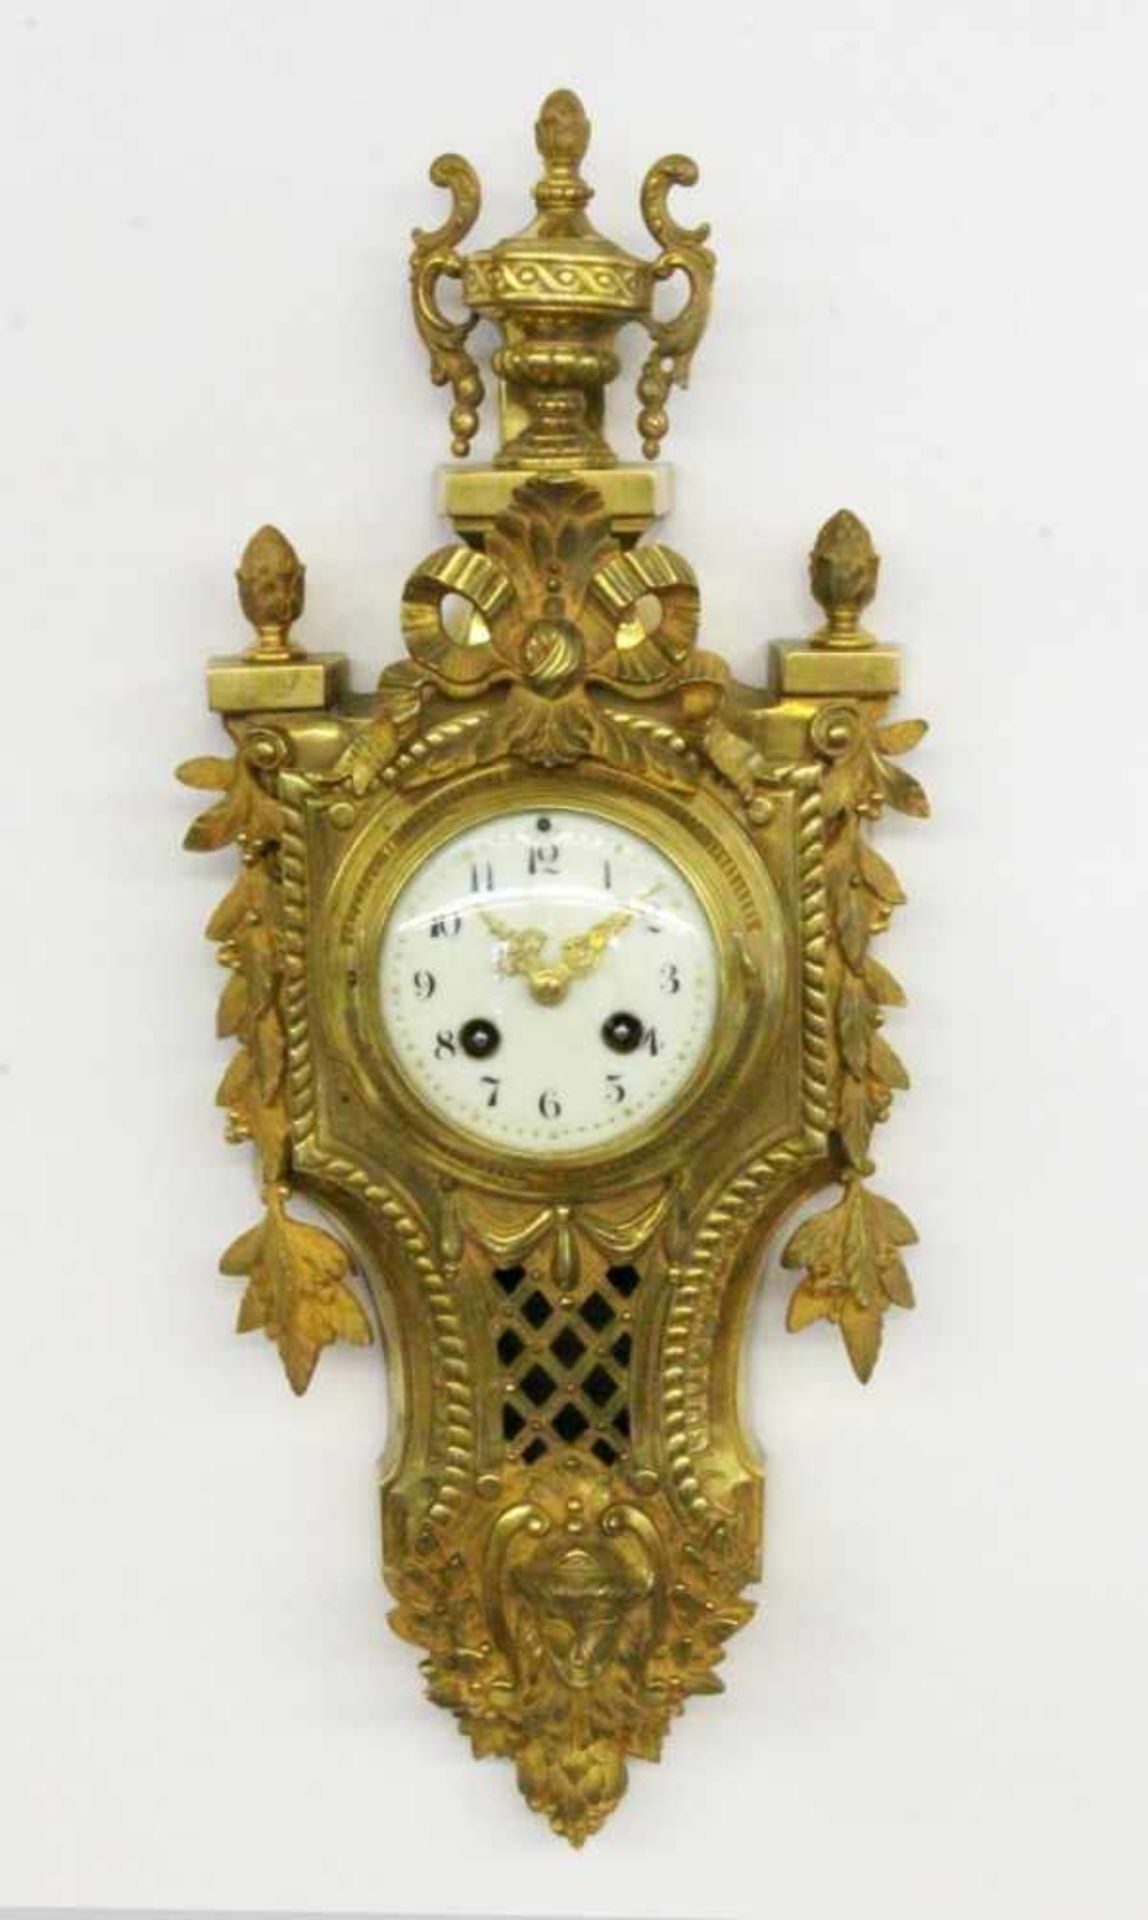 CARTELUHR Frankreich, 19.Jh. Vergoldetes Bronzegehäuse im Louis XVI Stil. Pendulenwerk mit